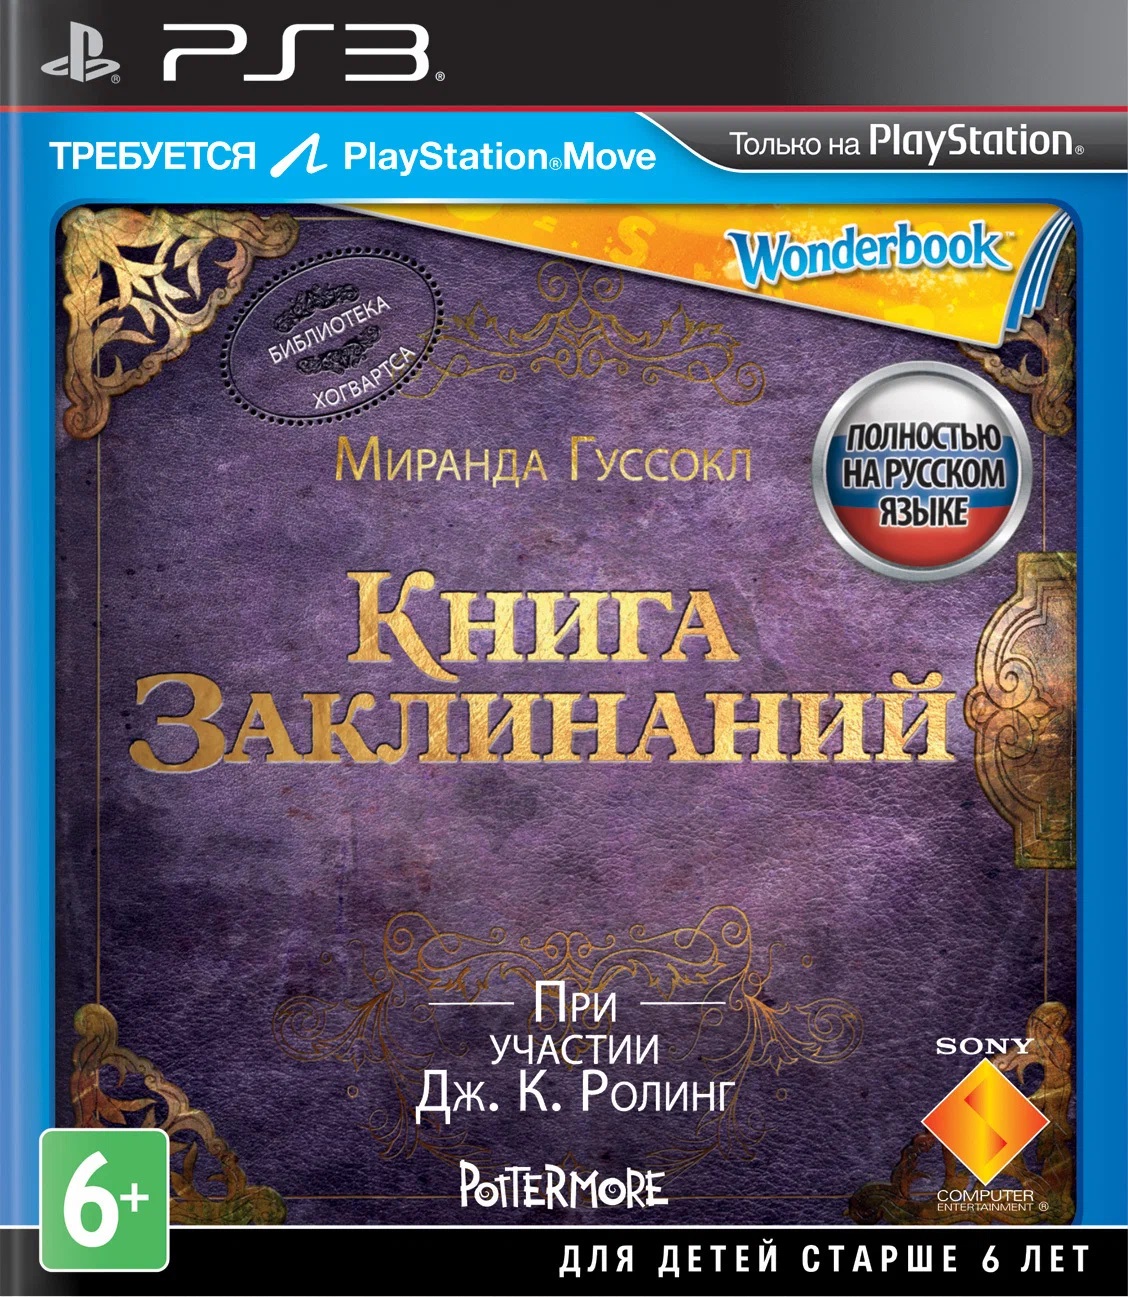 Игра Wonderbook: Book of Spells (PlayStation 3, полностью на русском языке)